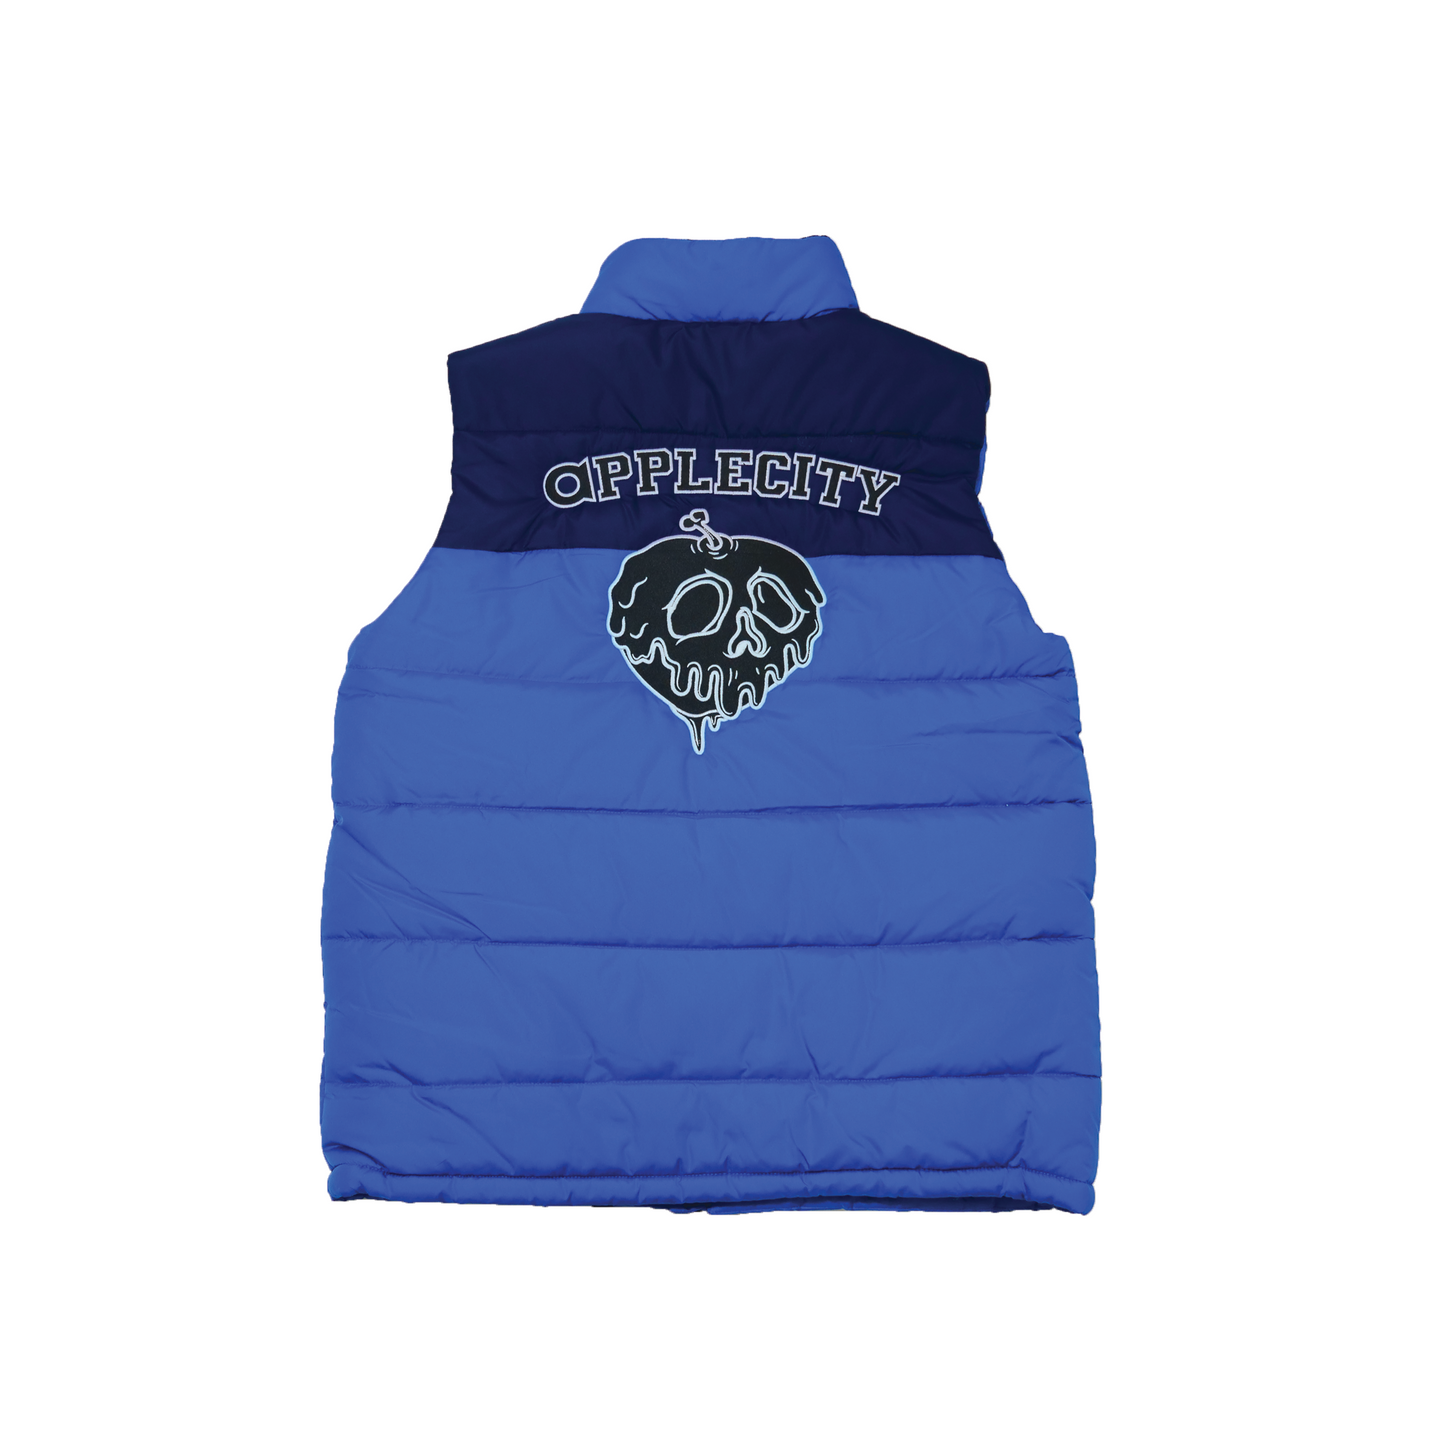 Applecity vest - Blue